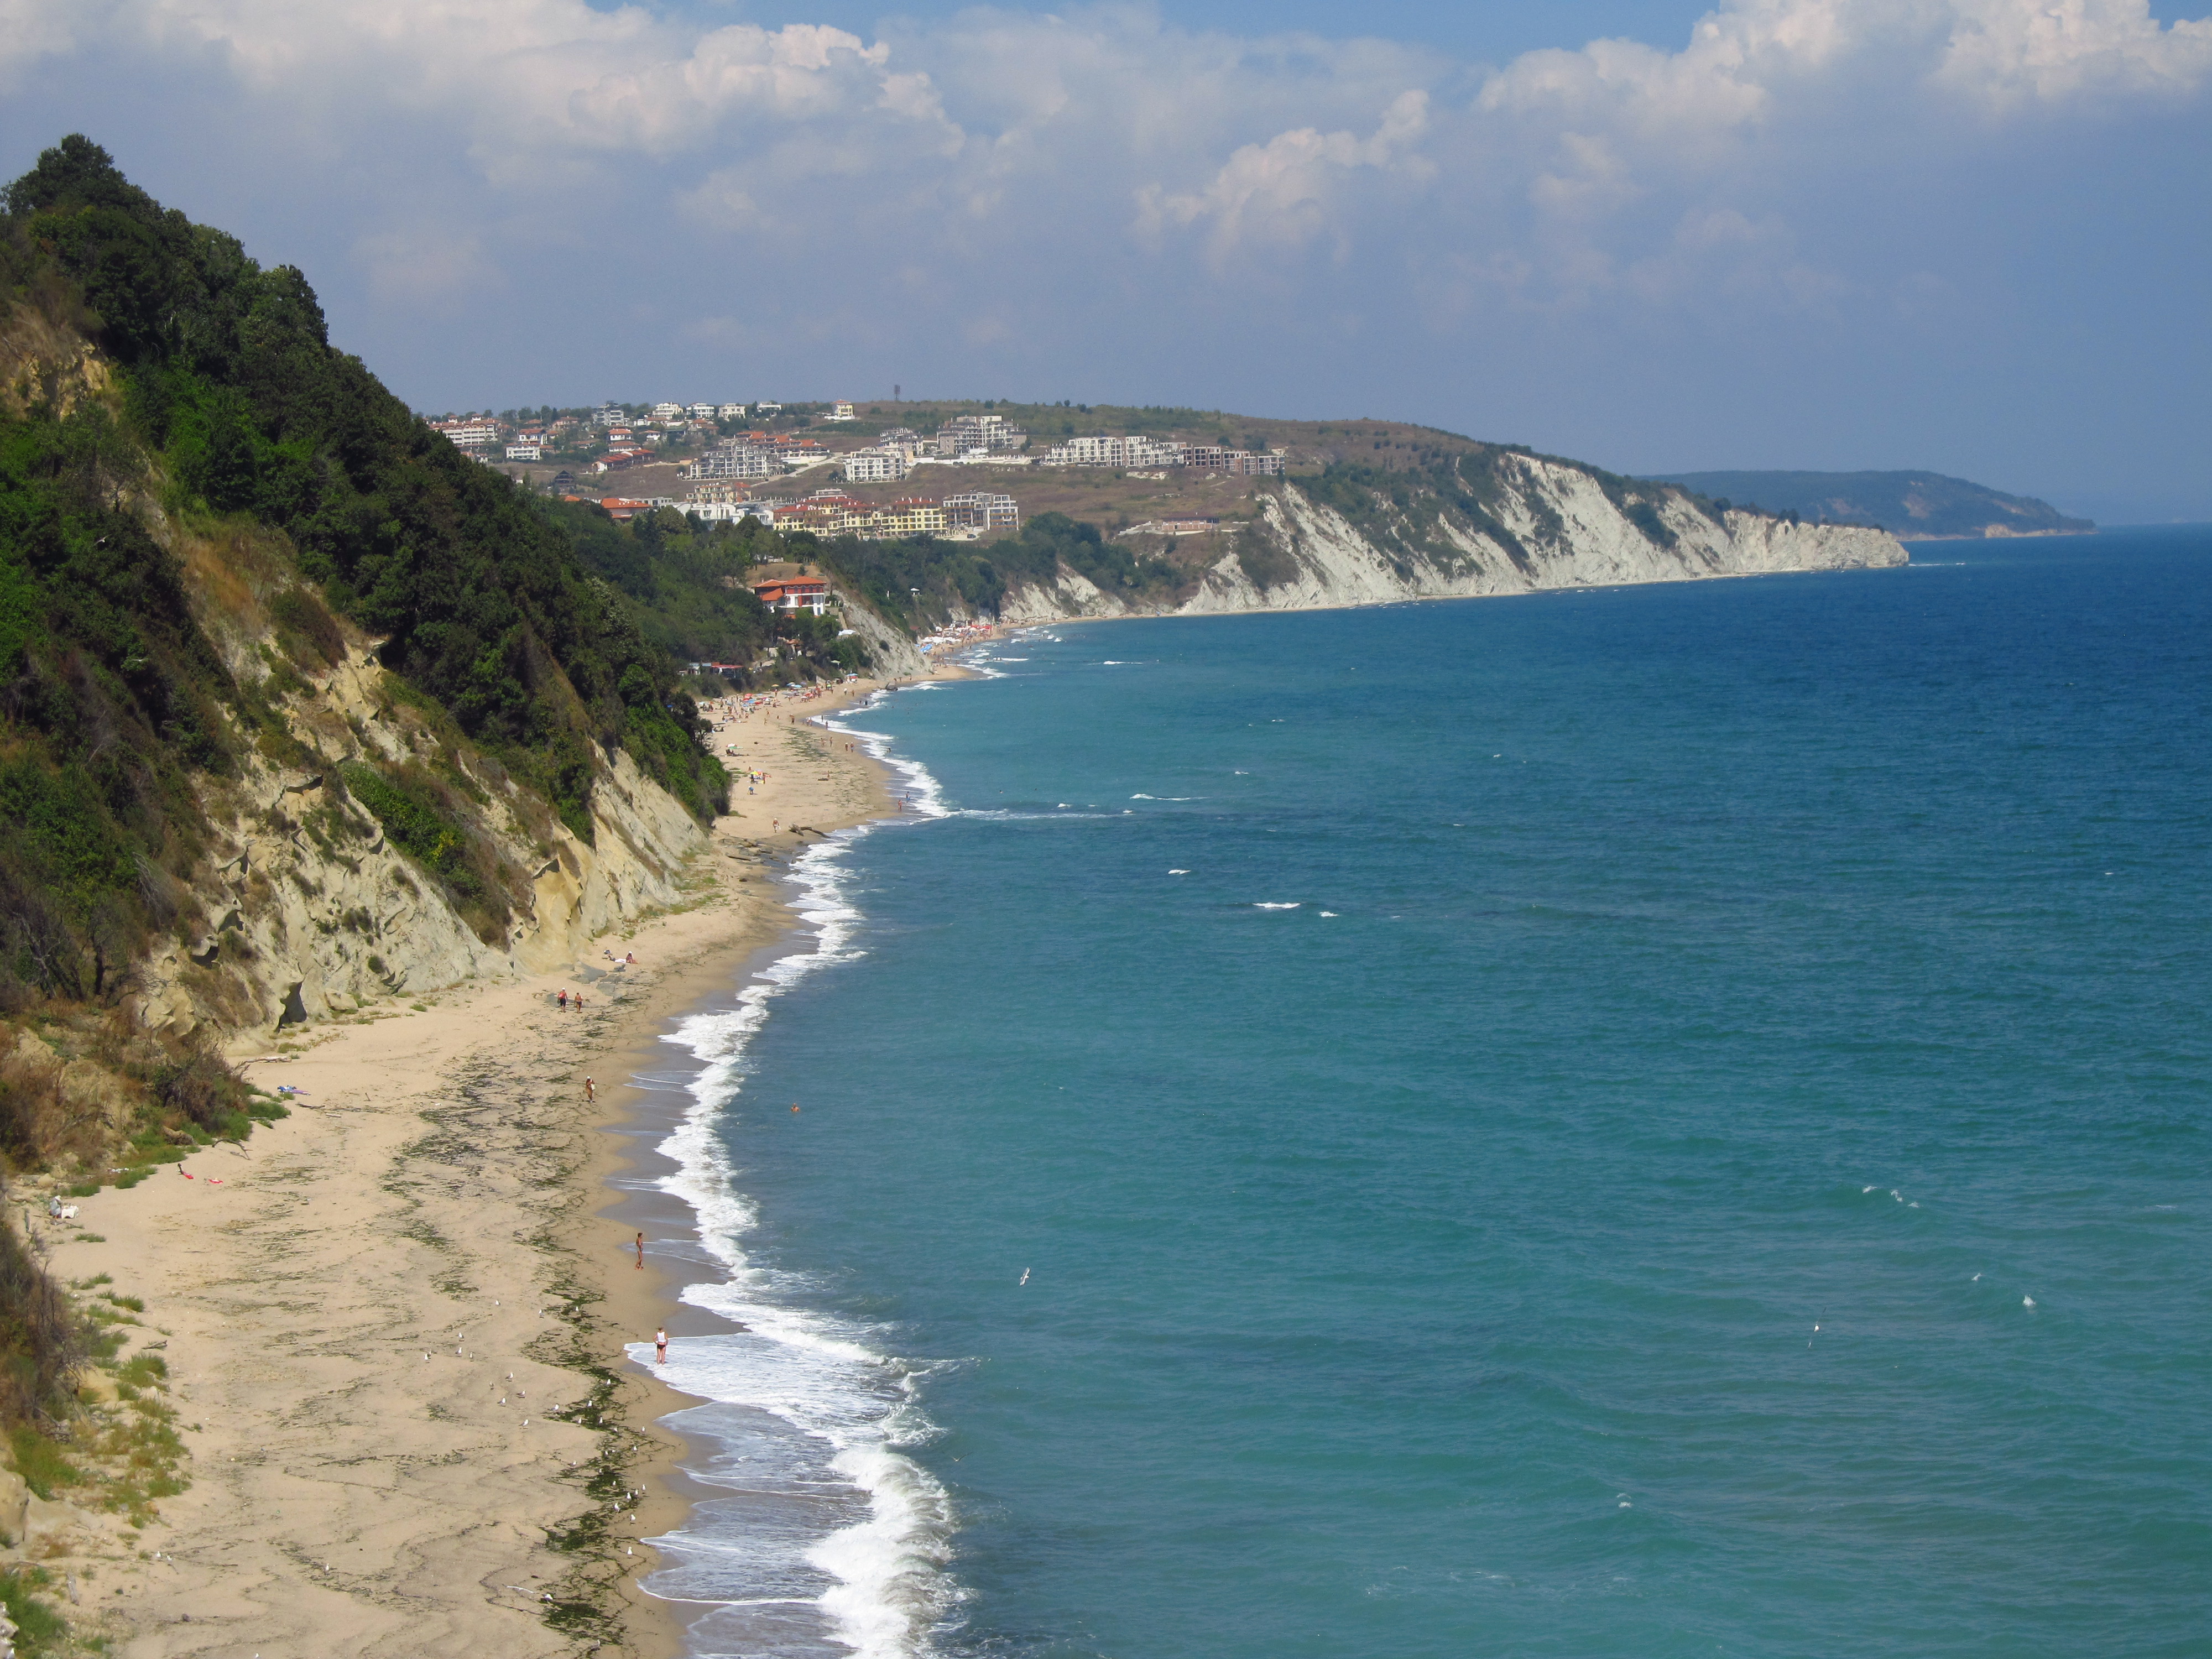 «Волощук і мандри: пішки навколо Чорного моря» - випуск №7: останнє повідомлення з Болгарії. ФОТО